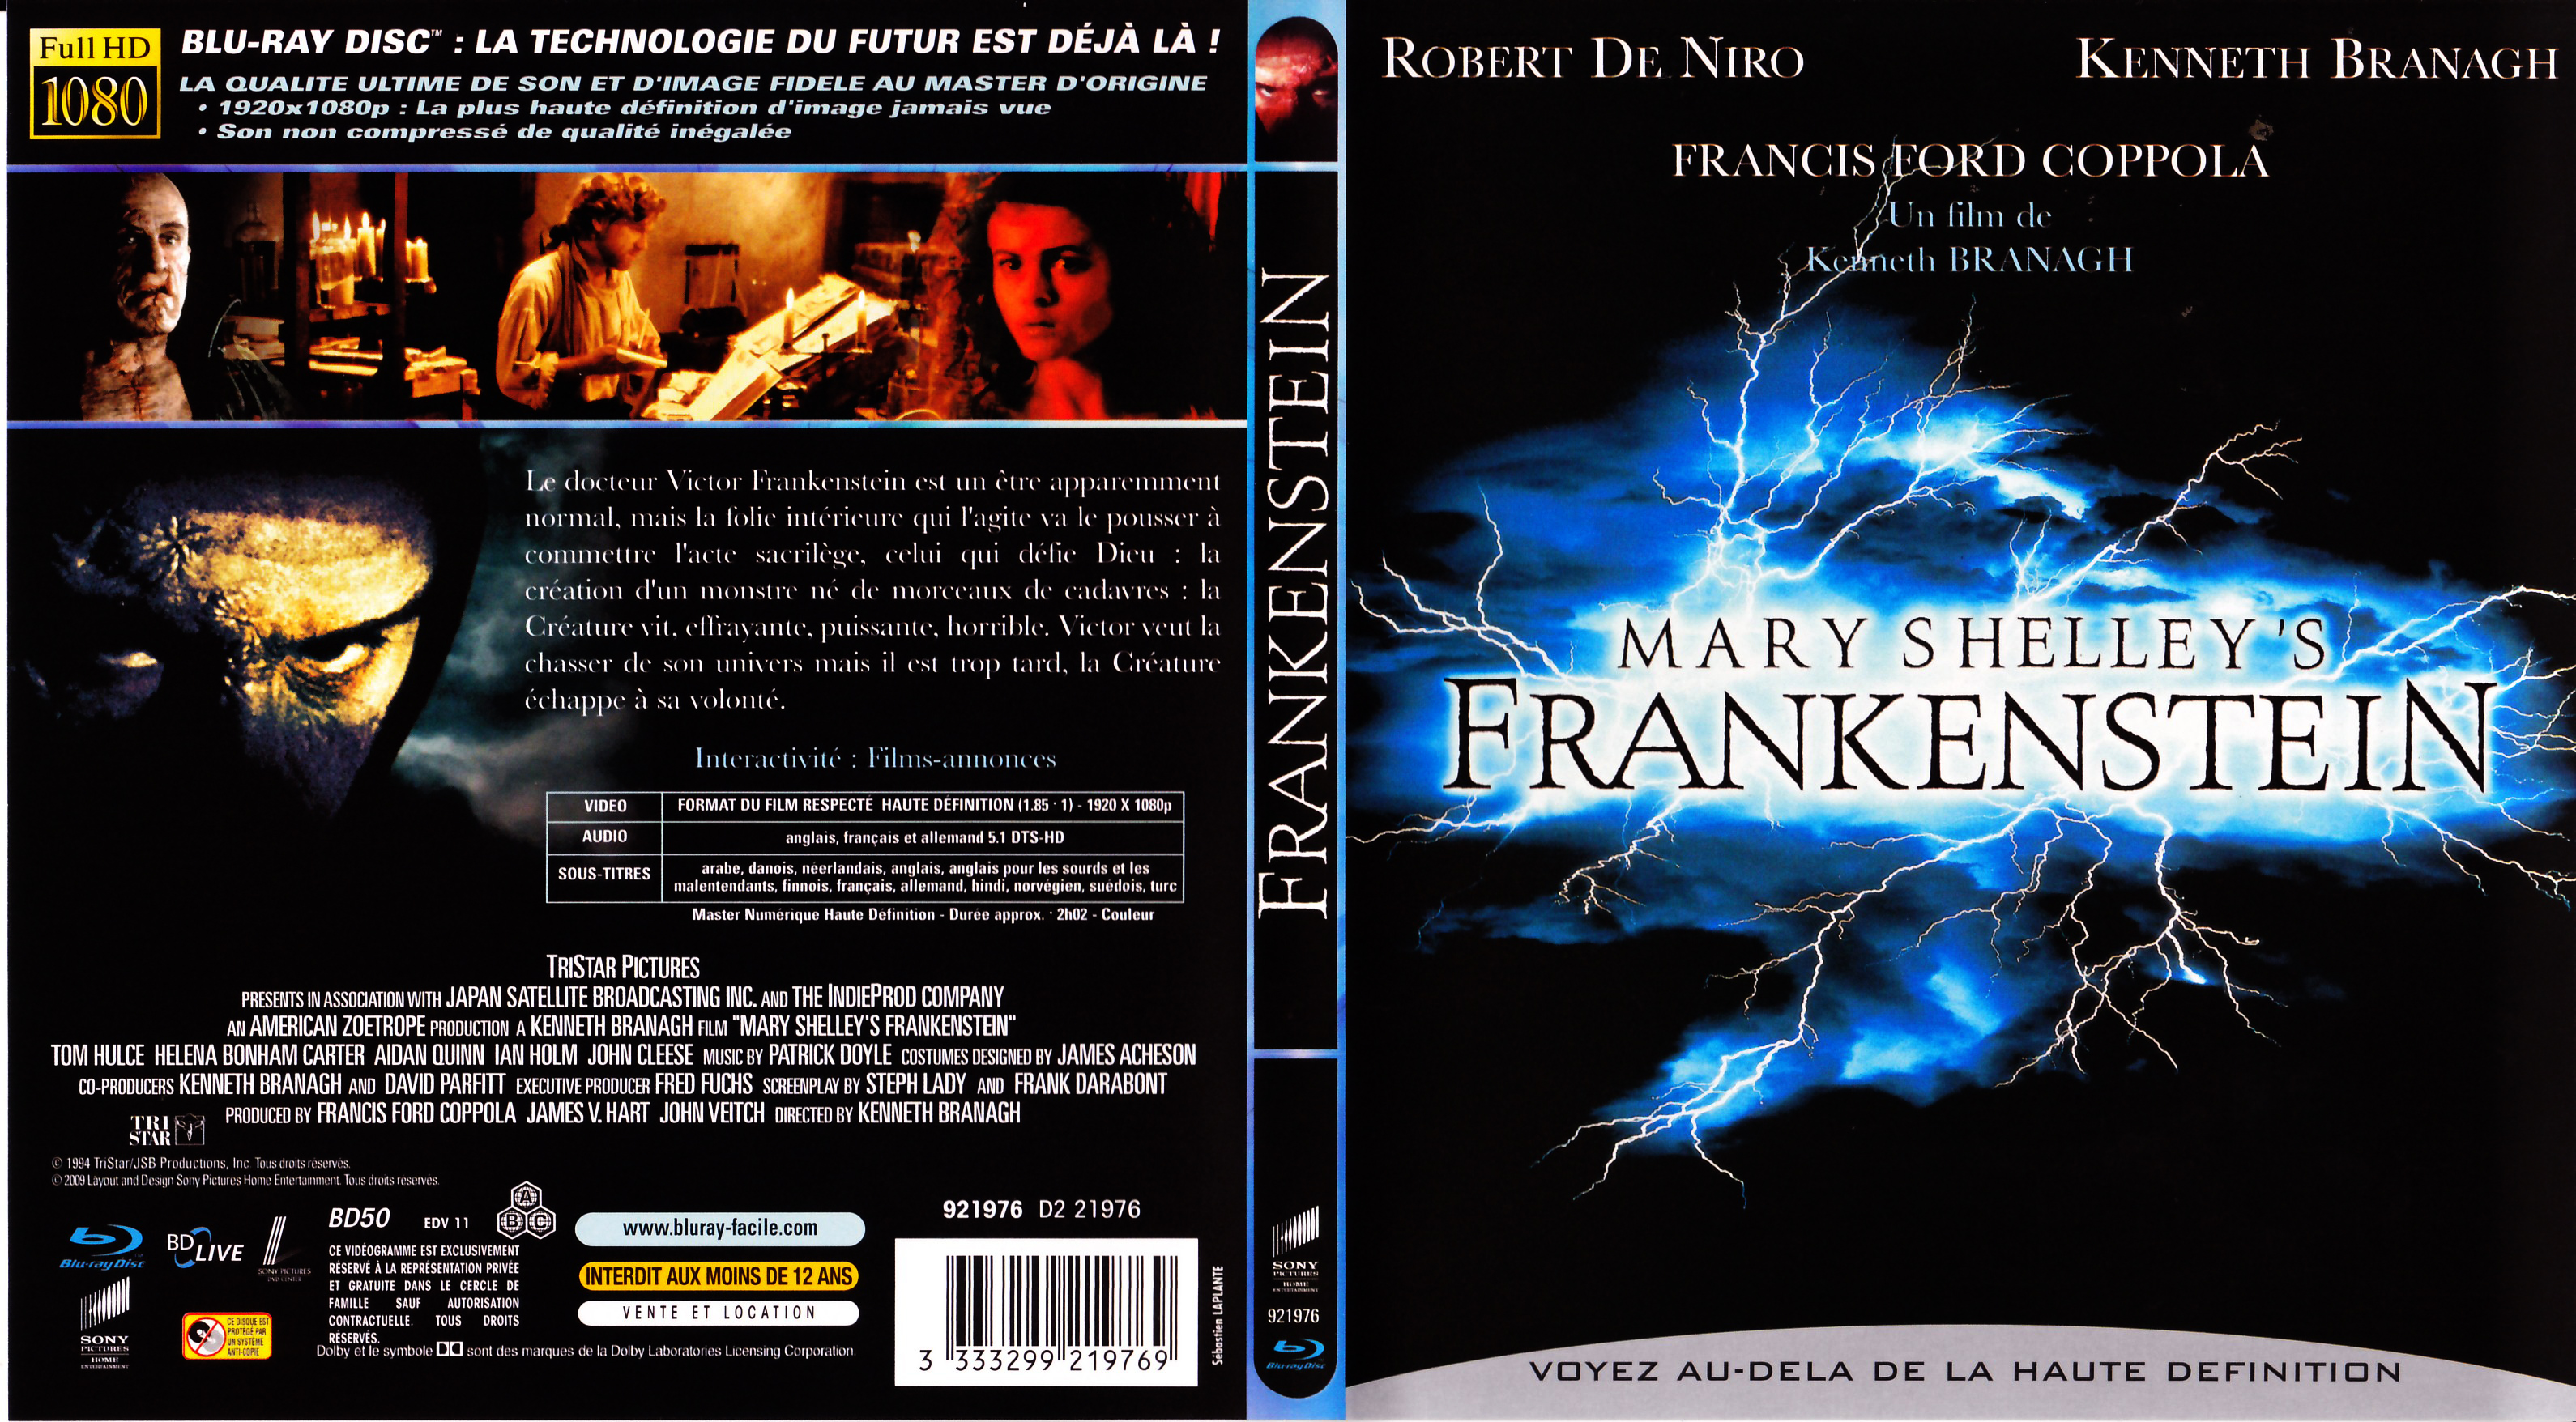 Jaquette DVD Frankenstein (Robert De Niro) (BLU-RAY)